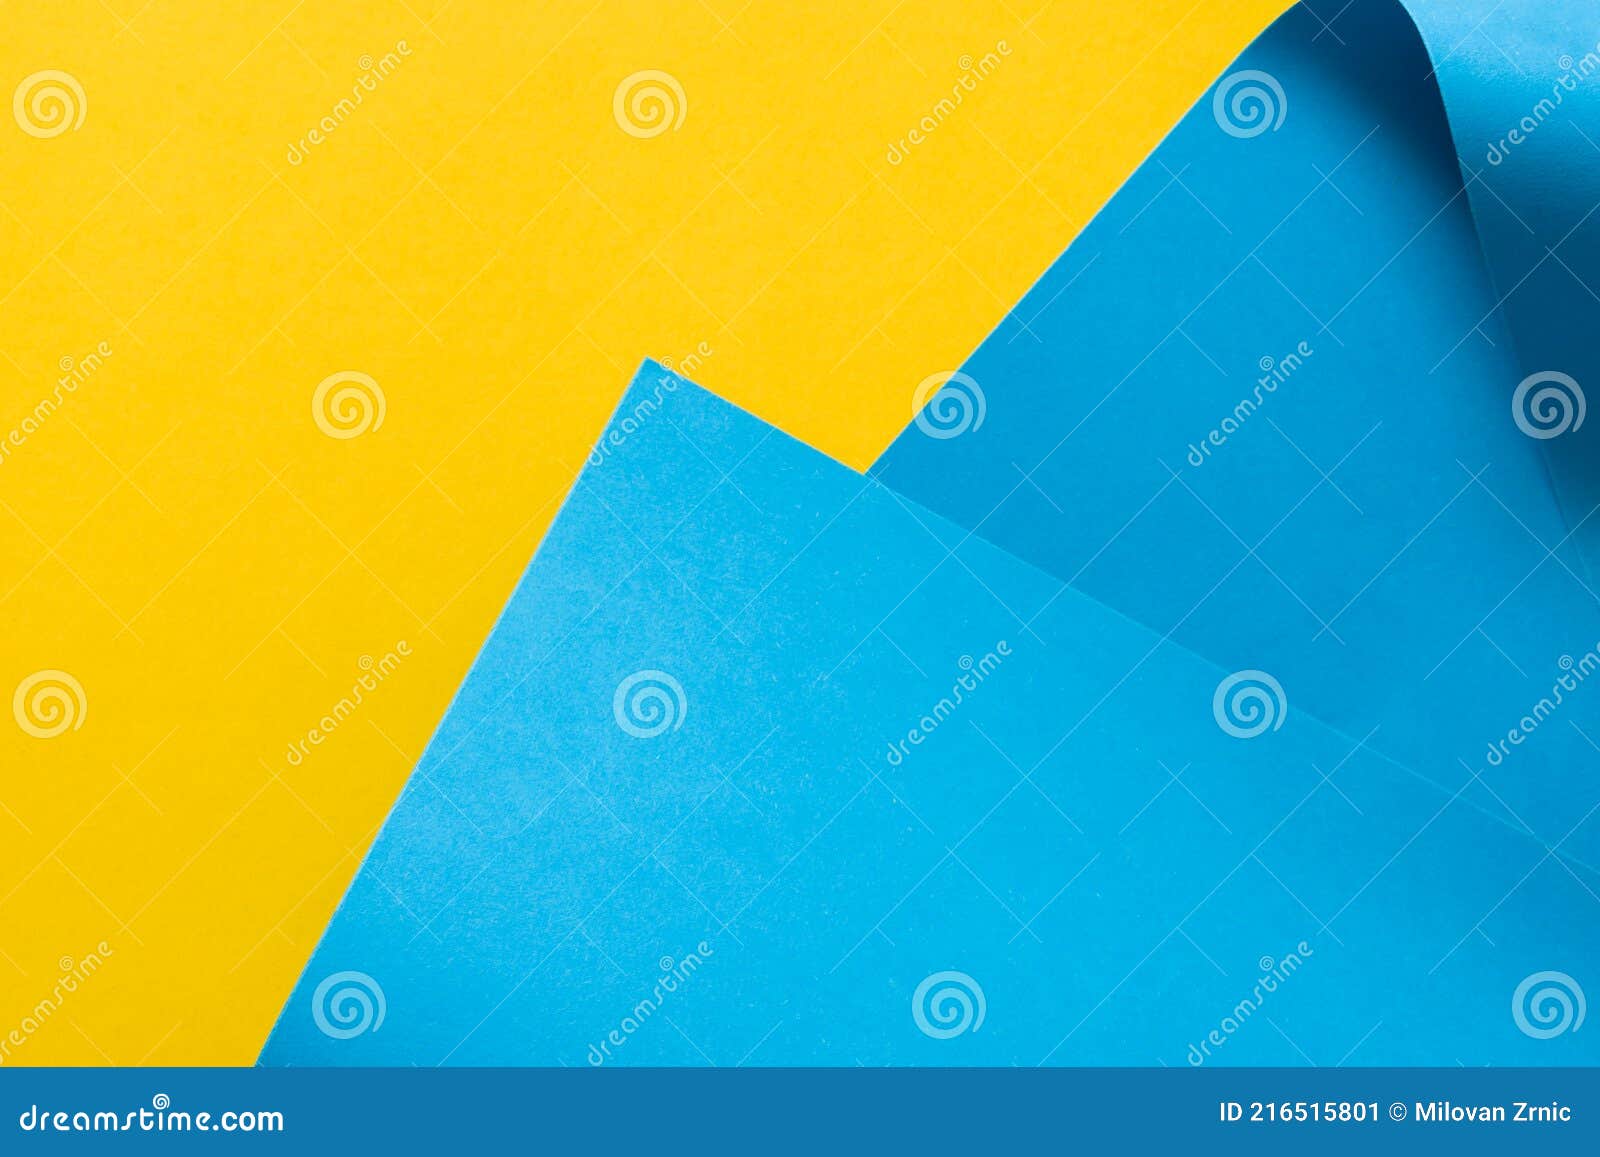 Folheto De Modelo De Fundo Azul E Amarelo 3d Imagem de Stock - Imagem de  imagem, linha: 216515801